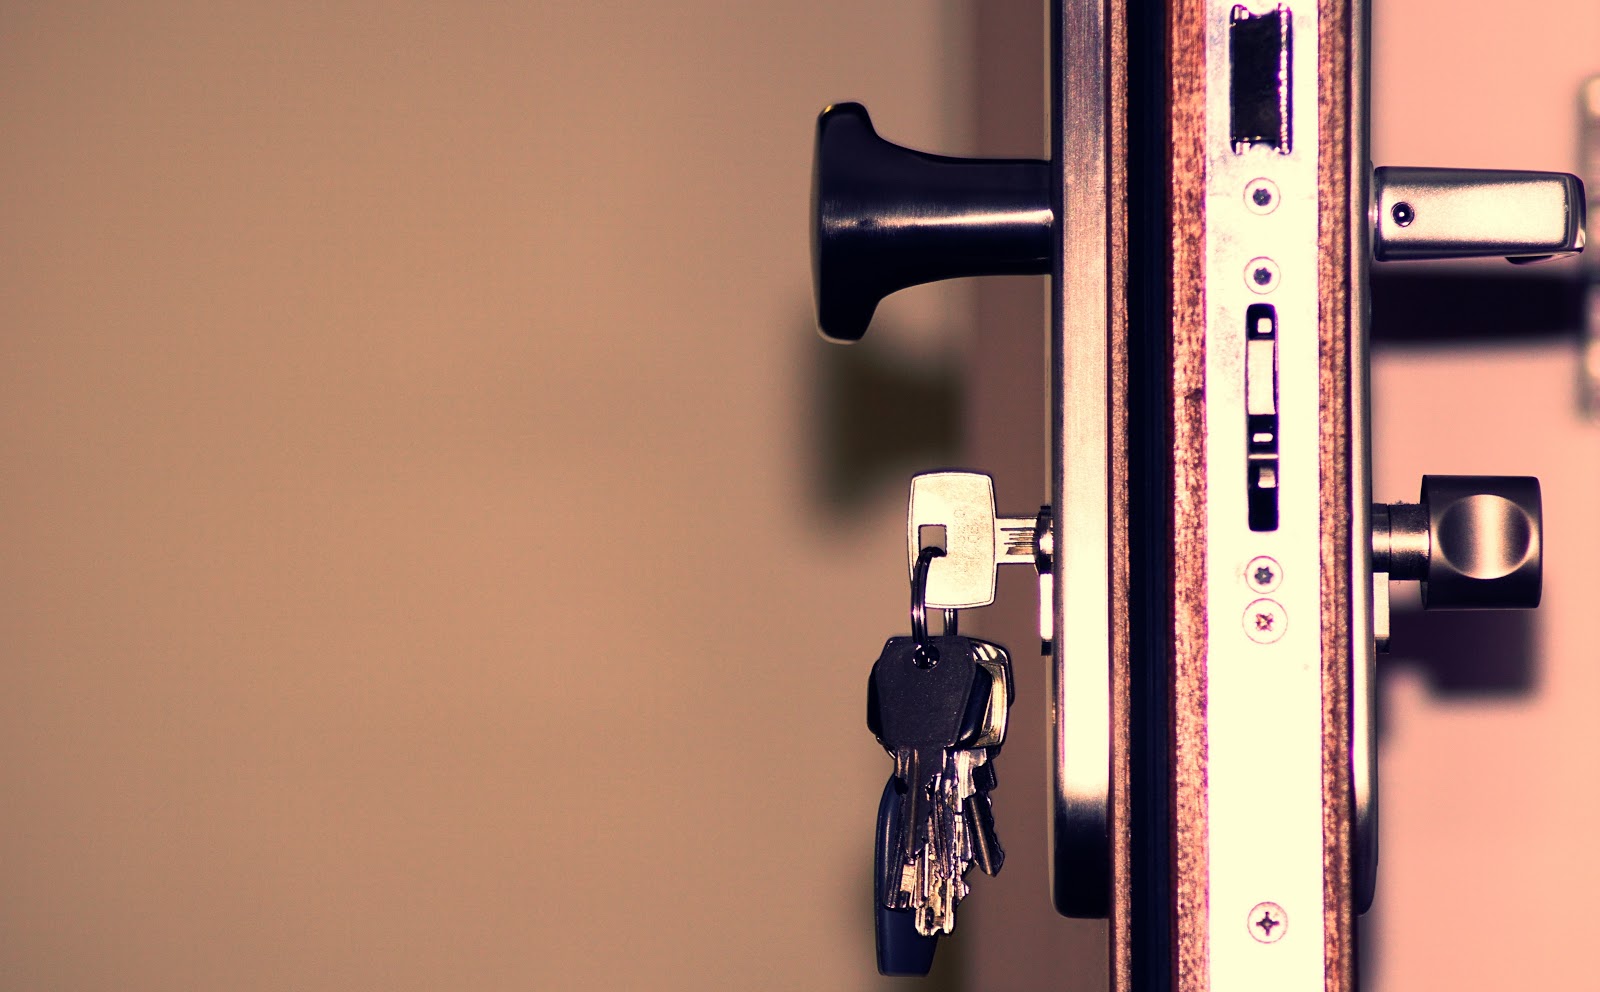 Keys in an unlocked and open door